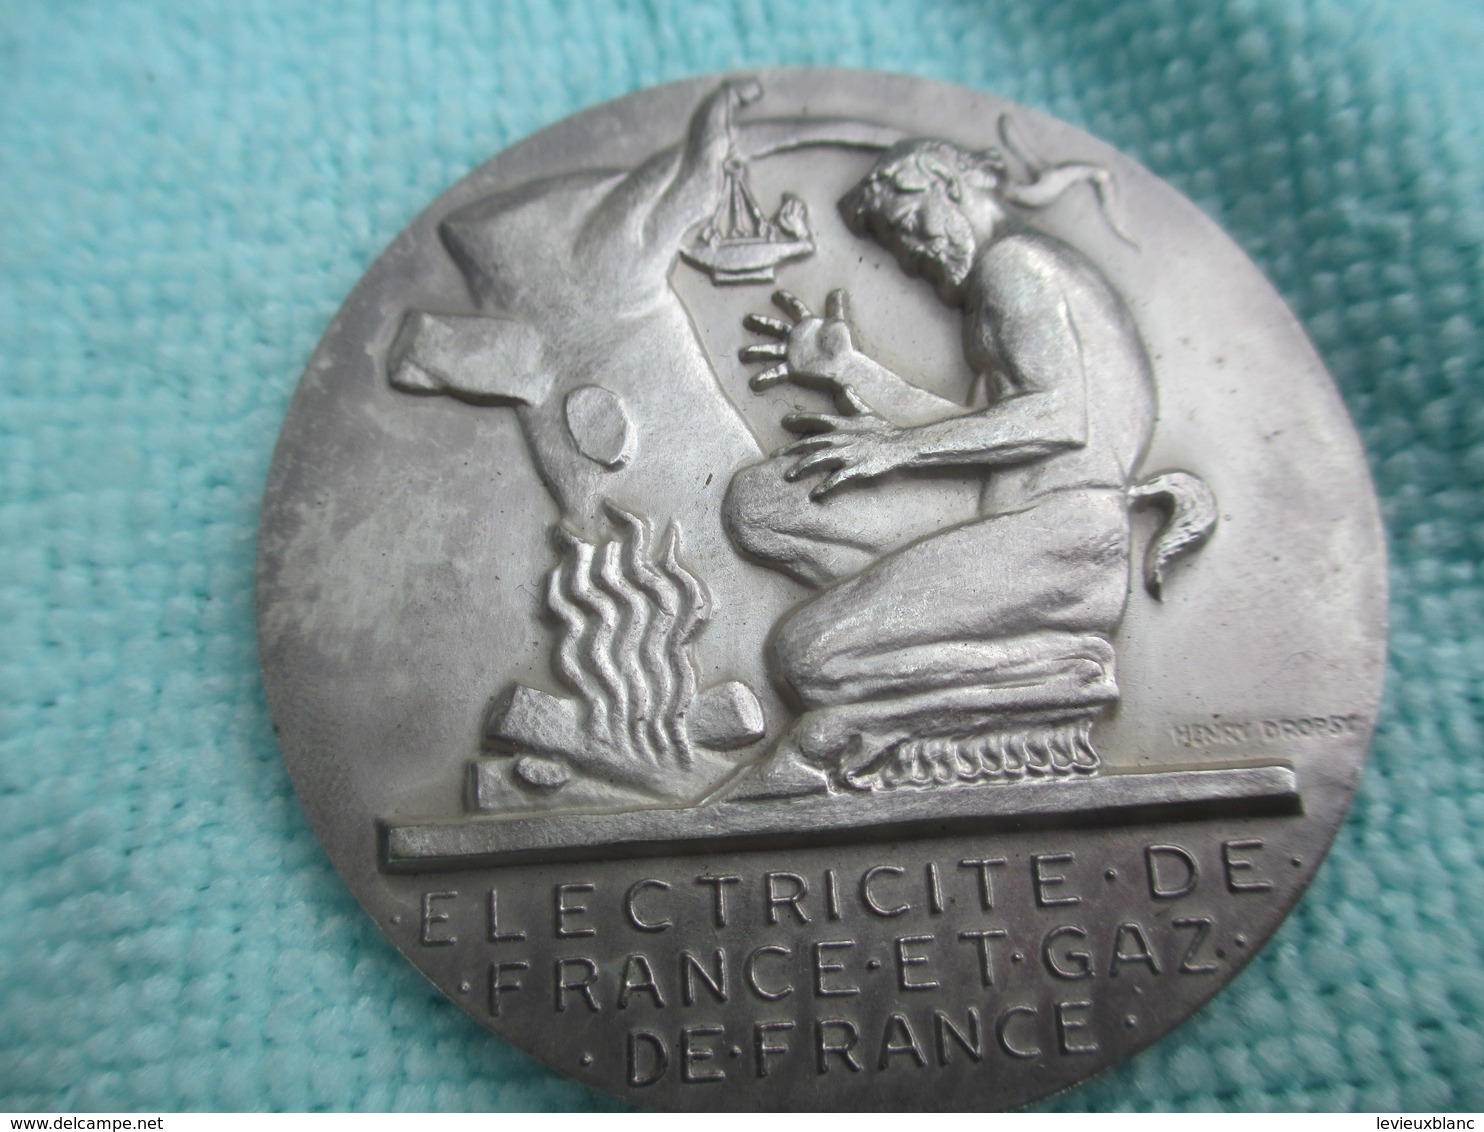 3 Médailles Ancienneté/EDF Et GDF/20-25-30 Années De Service/G MARCHAND/ H Dropsy/vers 1950-70                    MED203 - Frankreich